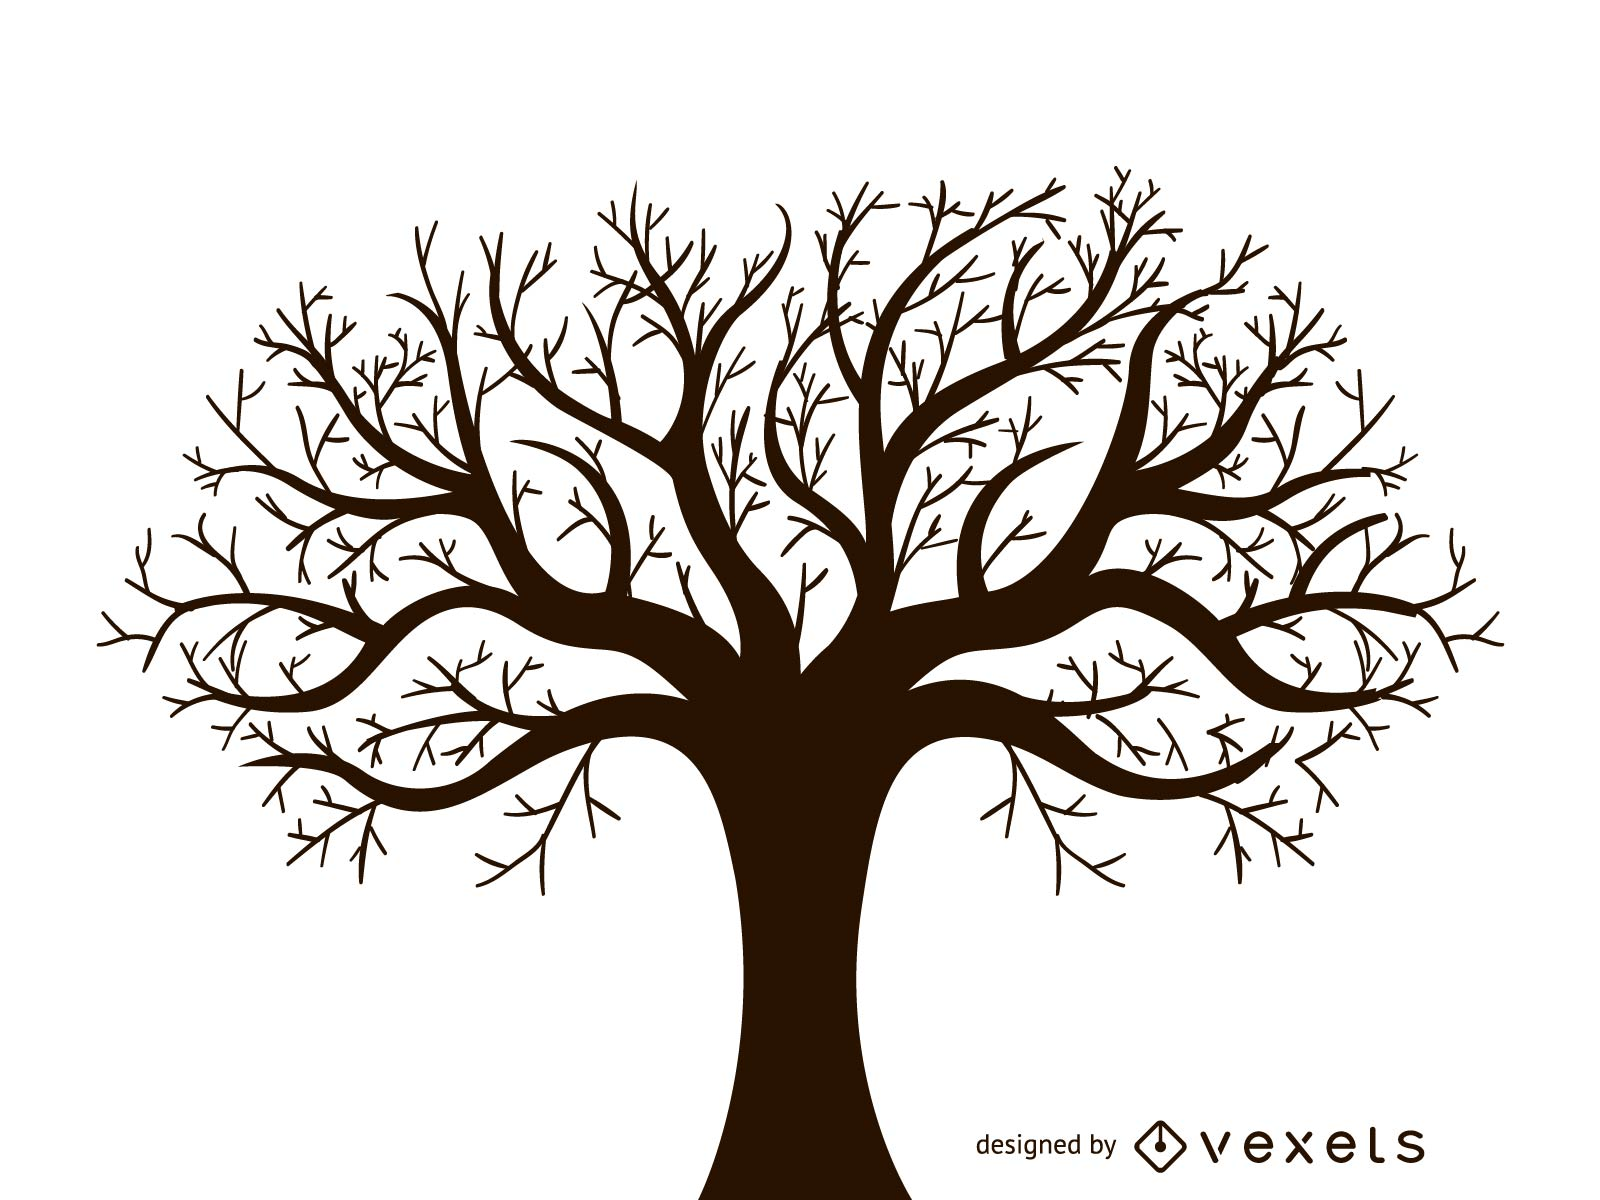 Leafless Autumn Tree Design Vector